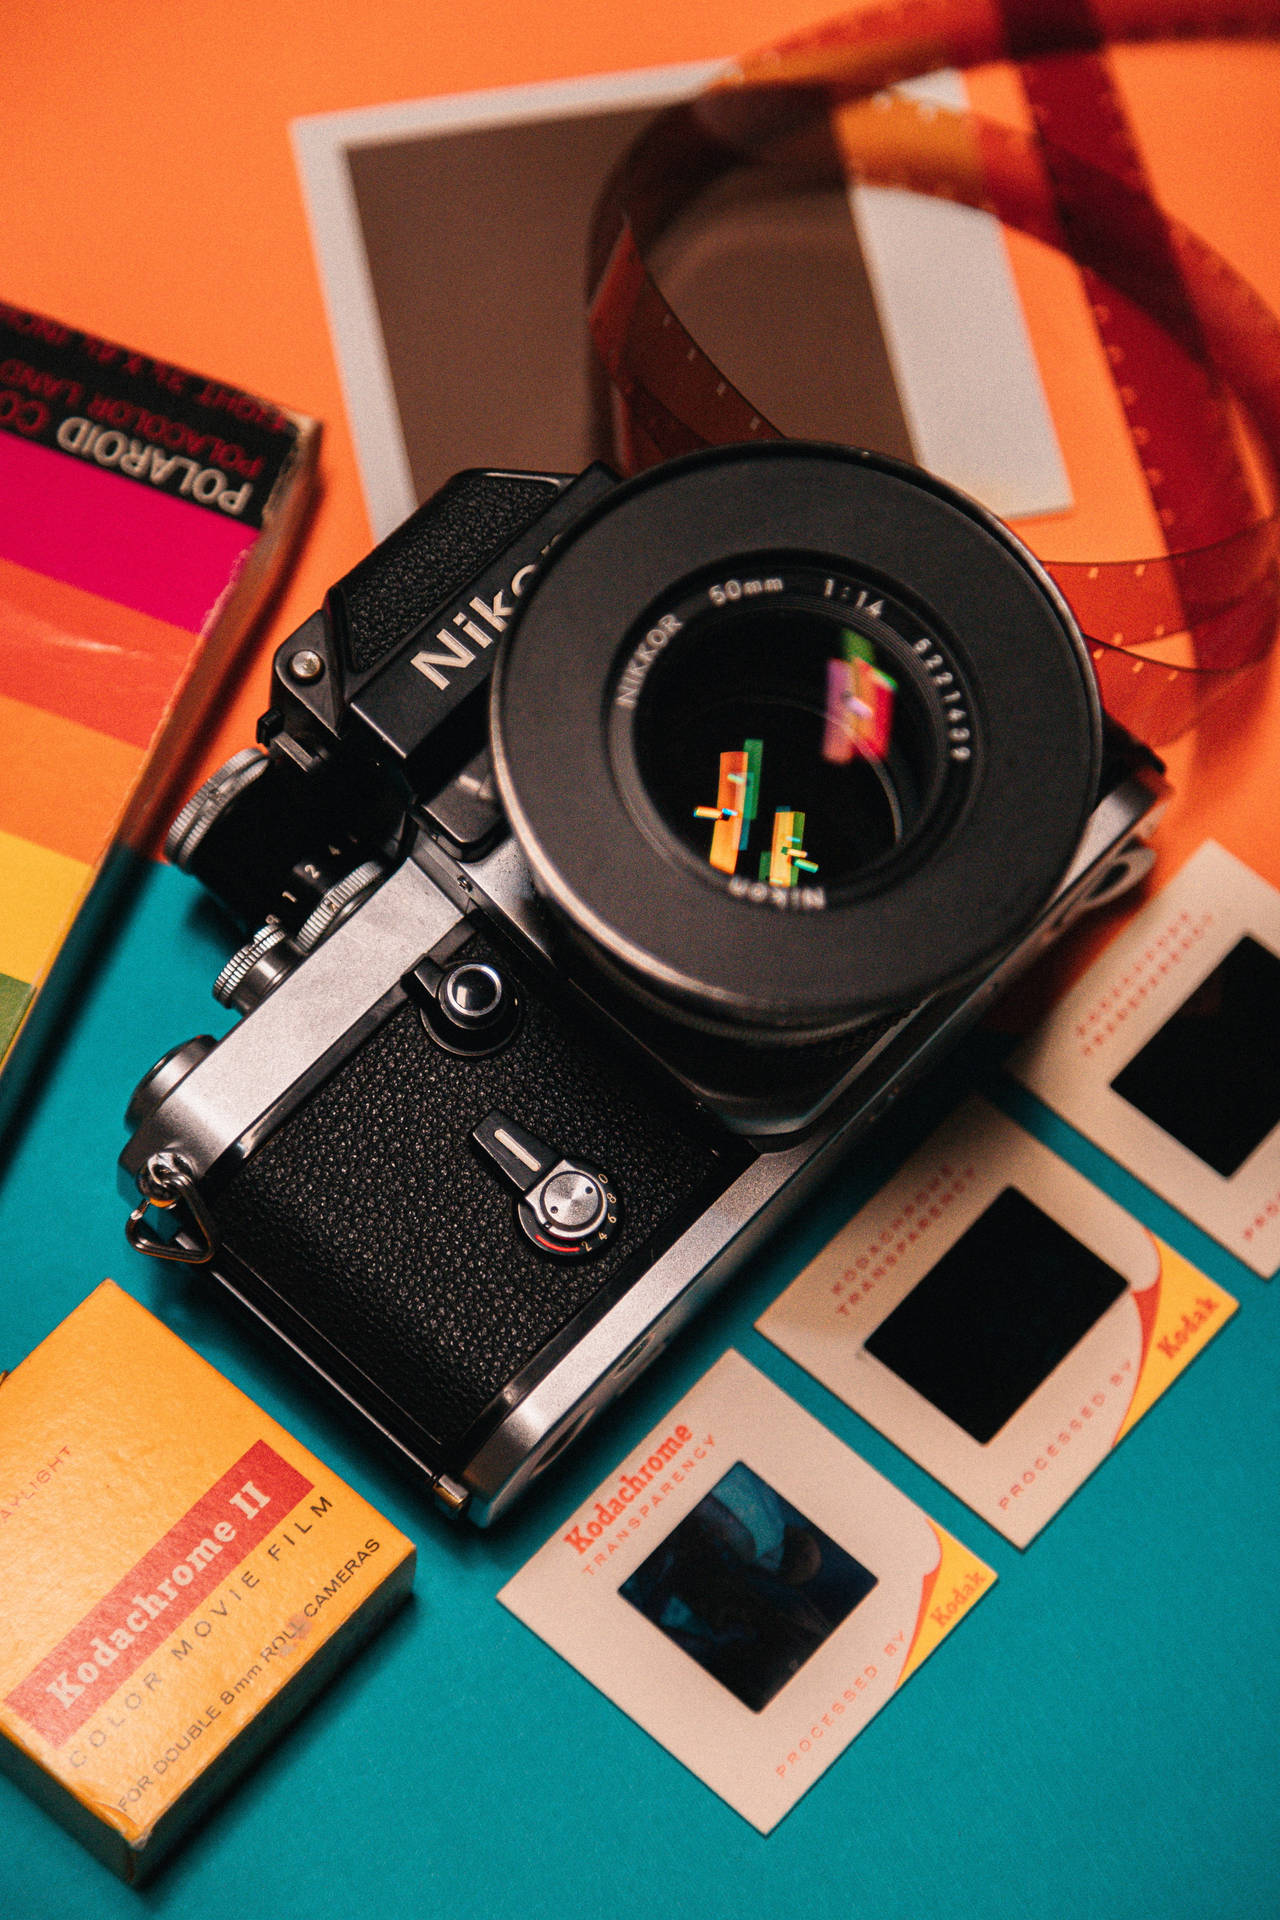 Nikon Dslr Camera And Polaroids